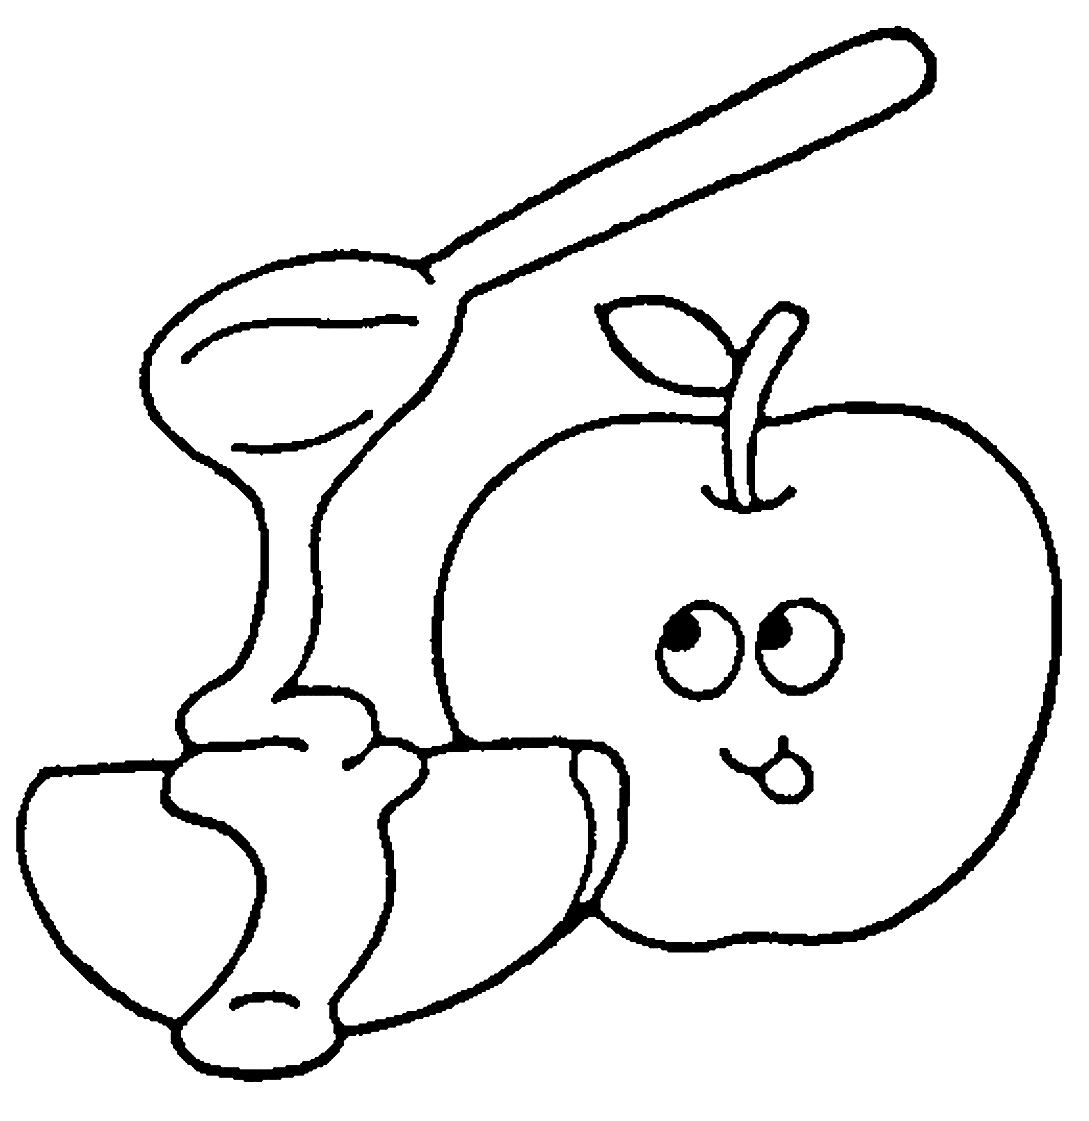 التفاح مع صفحة التلوين العسل